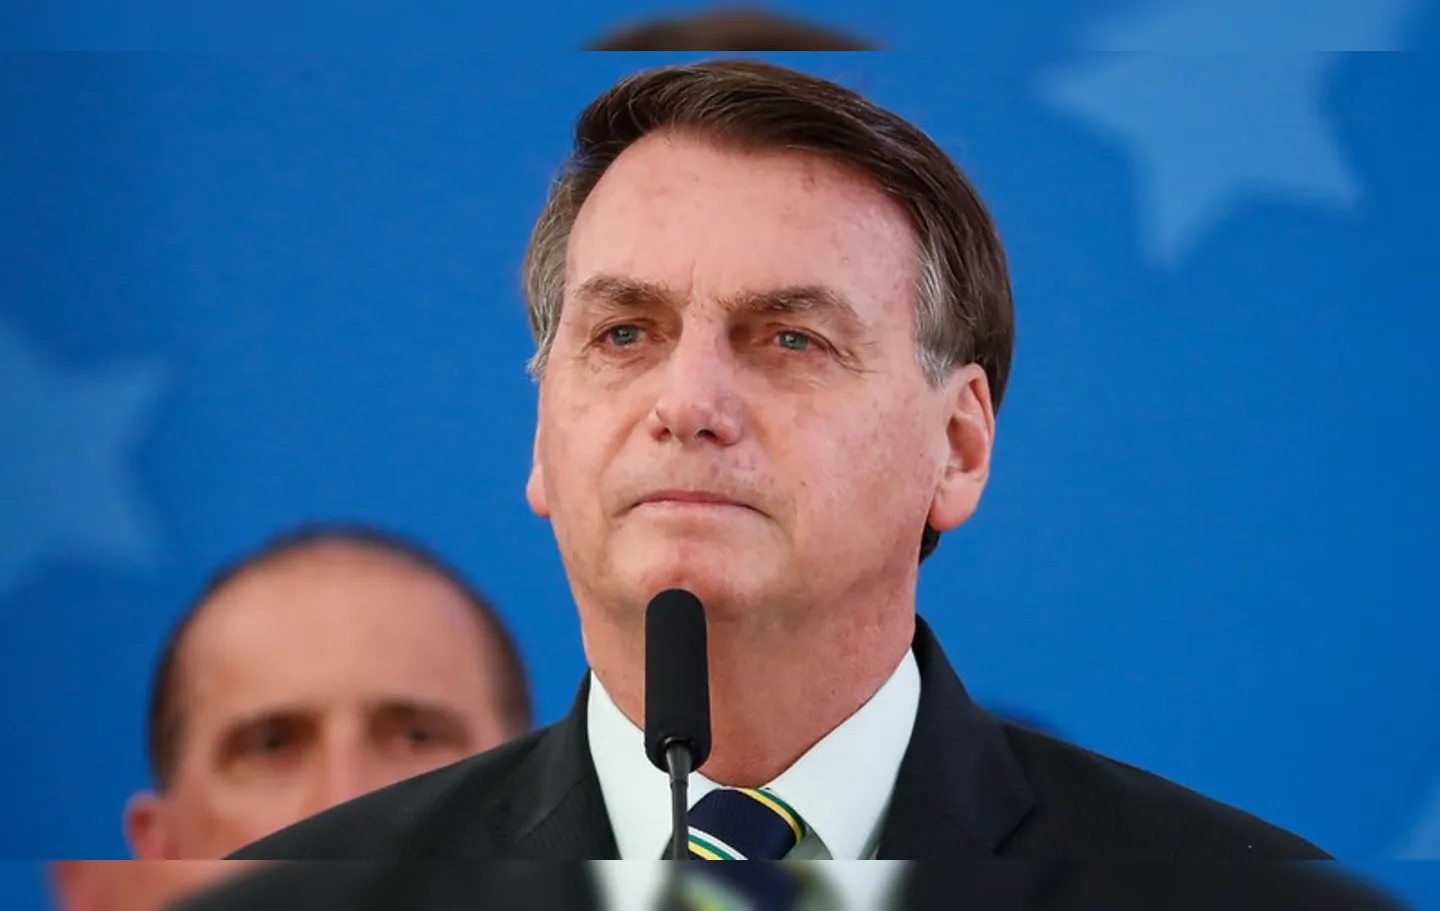 Bolsonaro comemorou a interrupção do estudo clínico da vacina CoronaVac